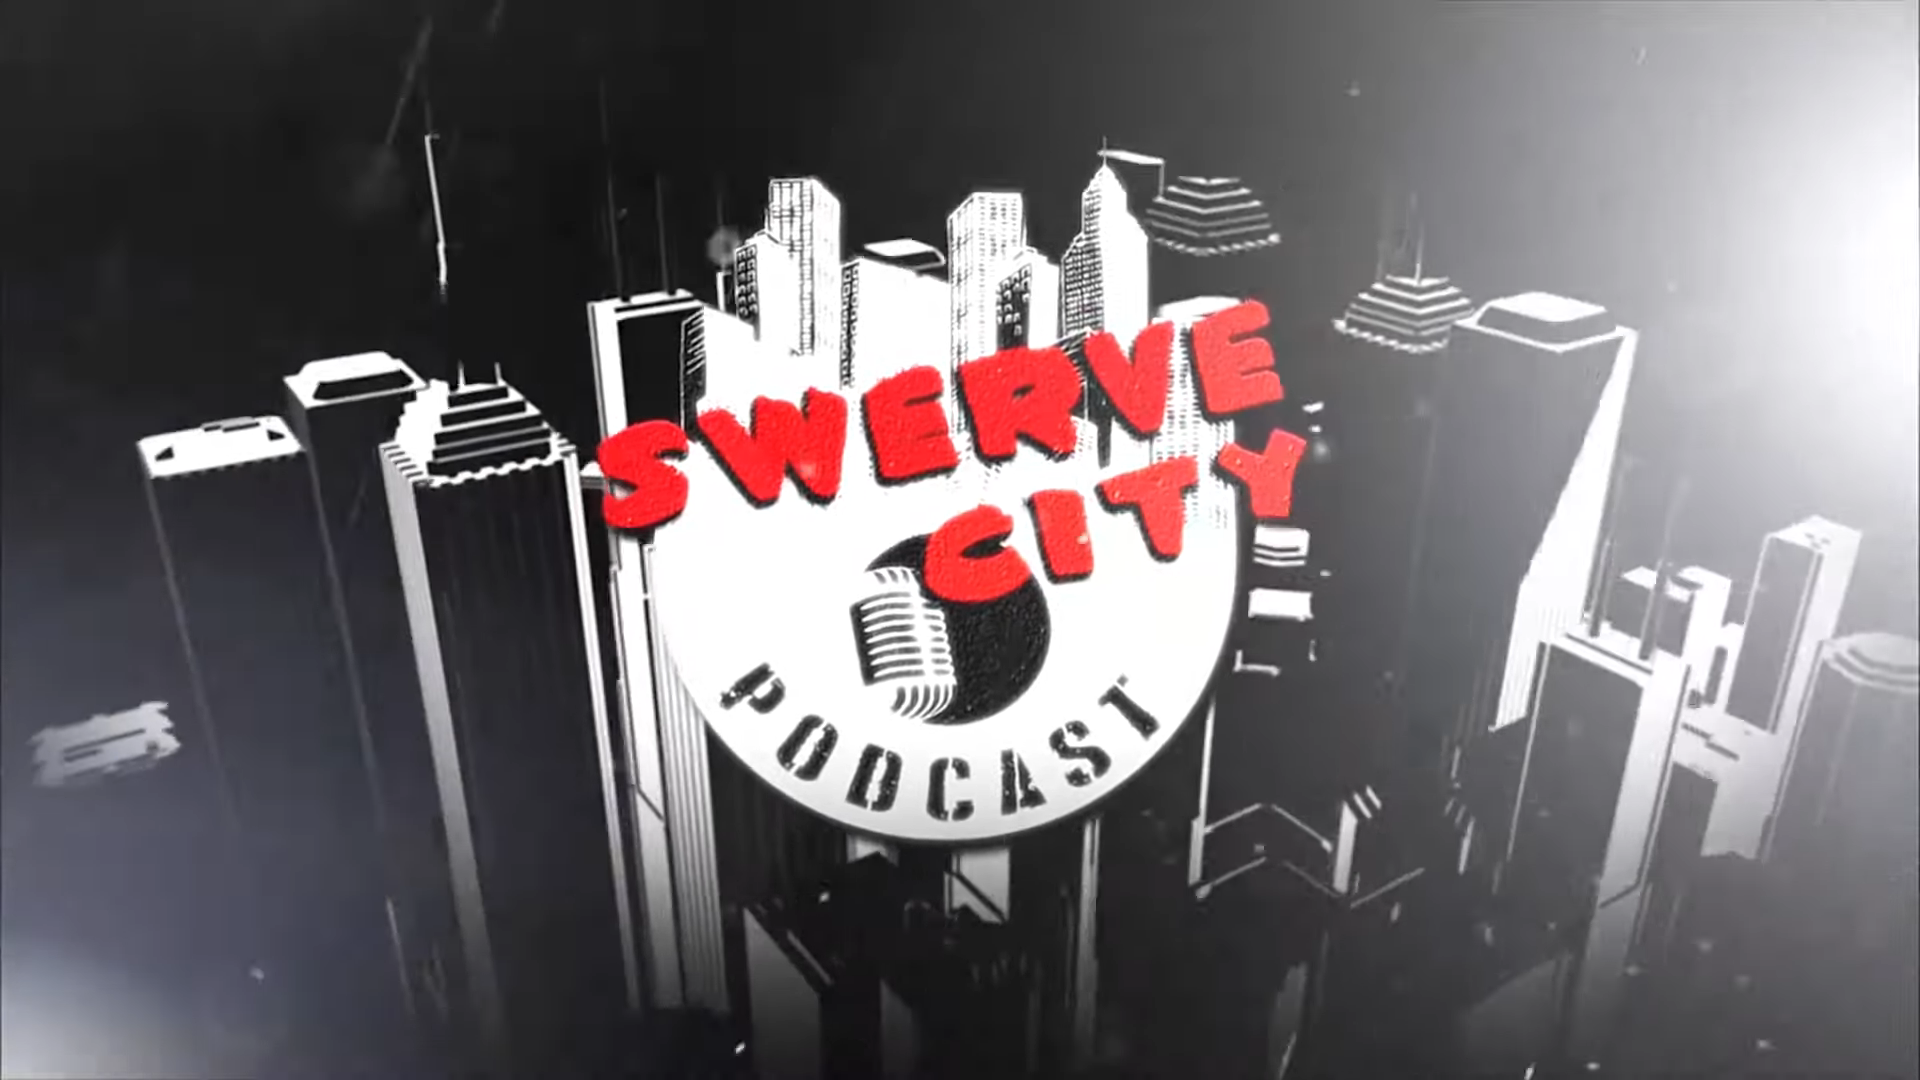 Swerve City Podcast Logo